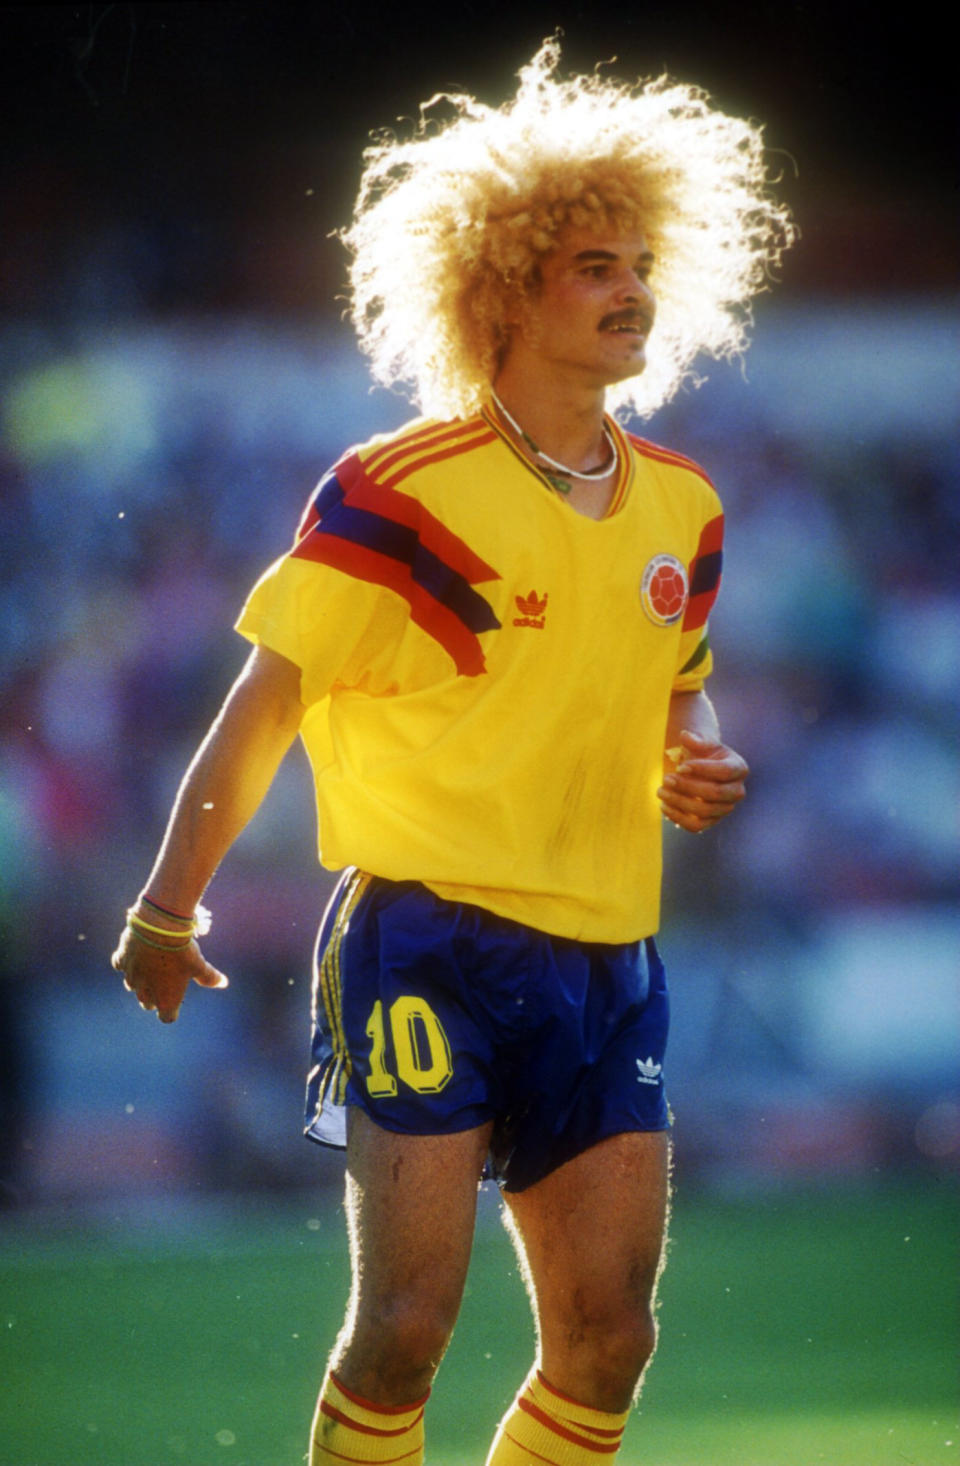 Wer an Kolumbiens große Fußballlegende Carlos Valderrama denkt, hat sofort eines im Kopf: Ganz viele goldige Löckchen.